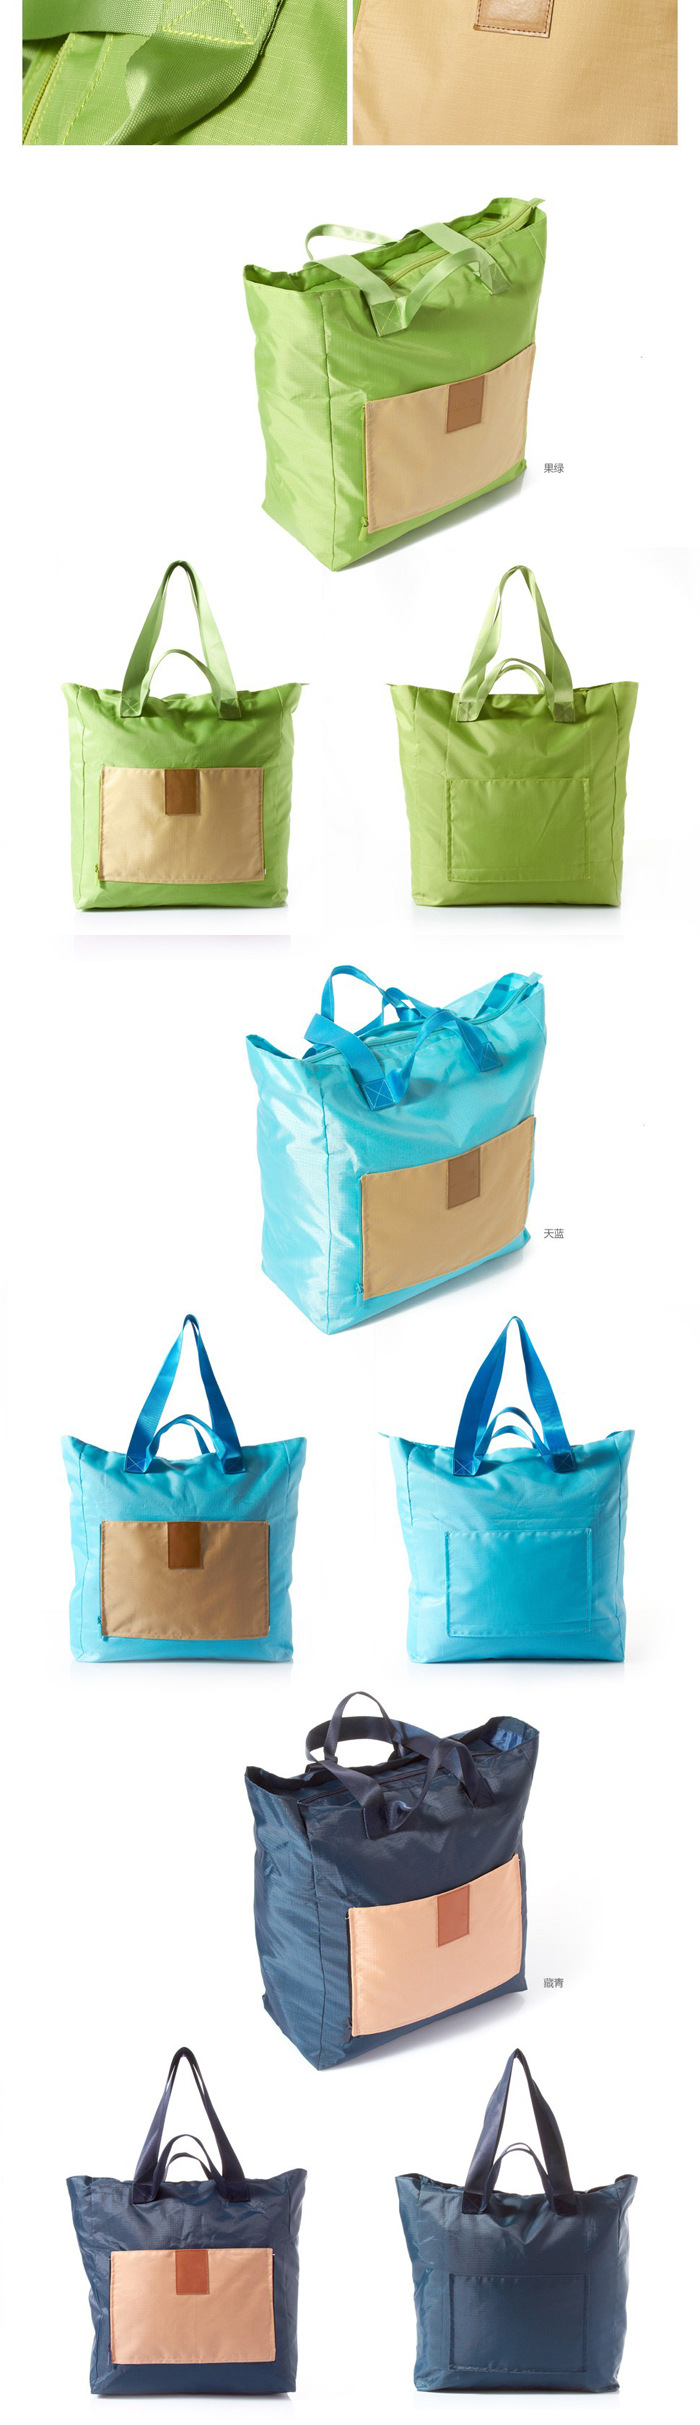 新款 可折疊包 旅行包 行李包麗芙包 差旅便攜折疊旅行收納包